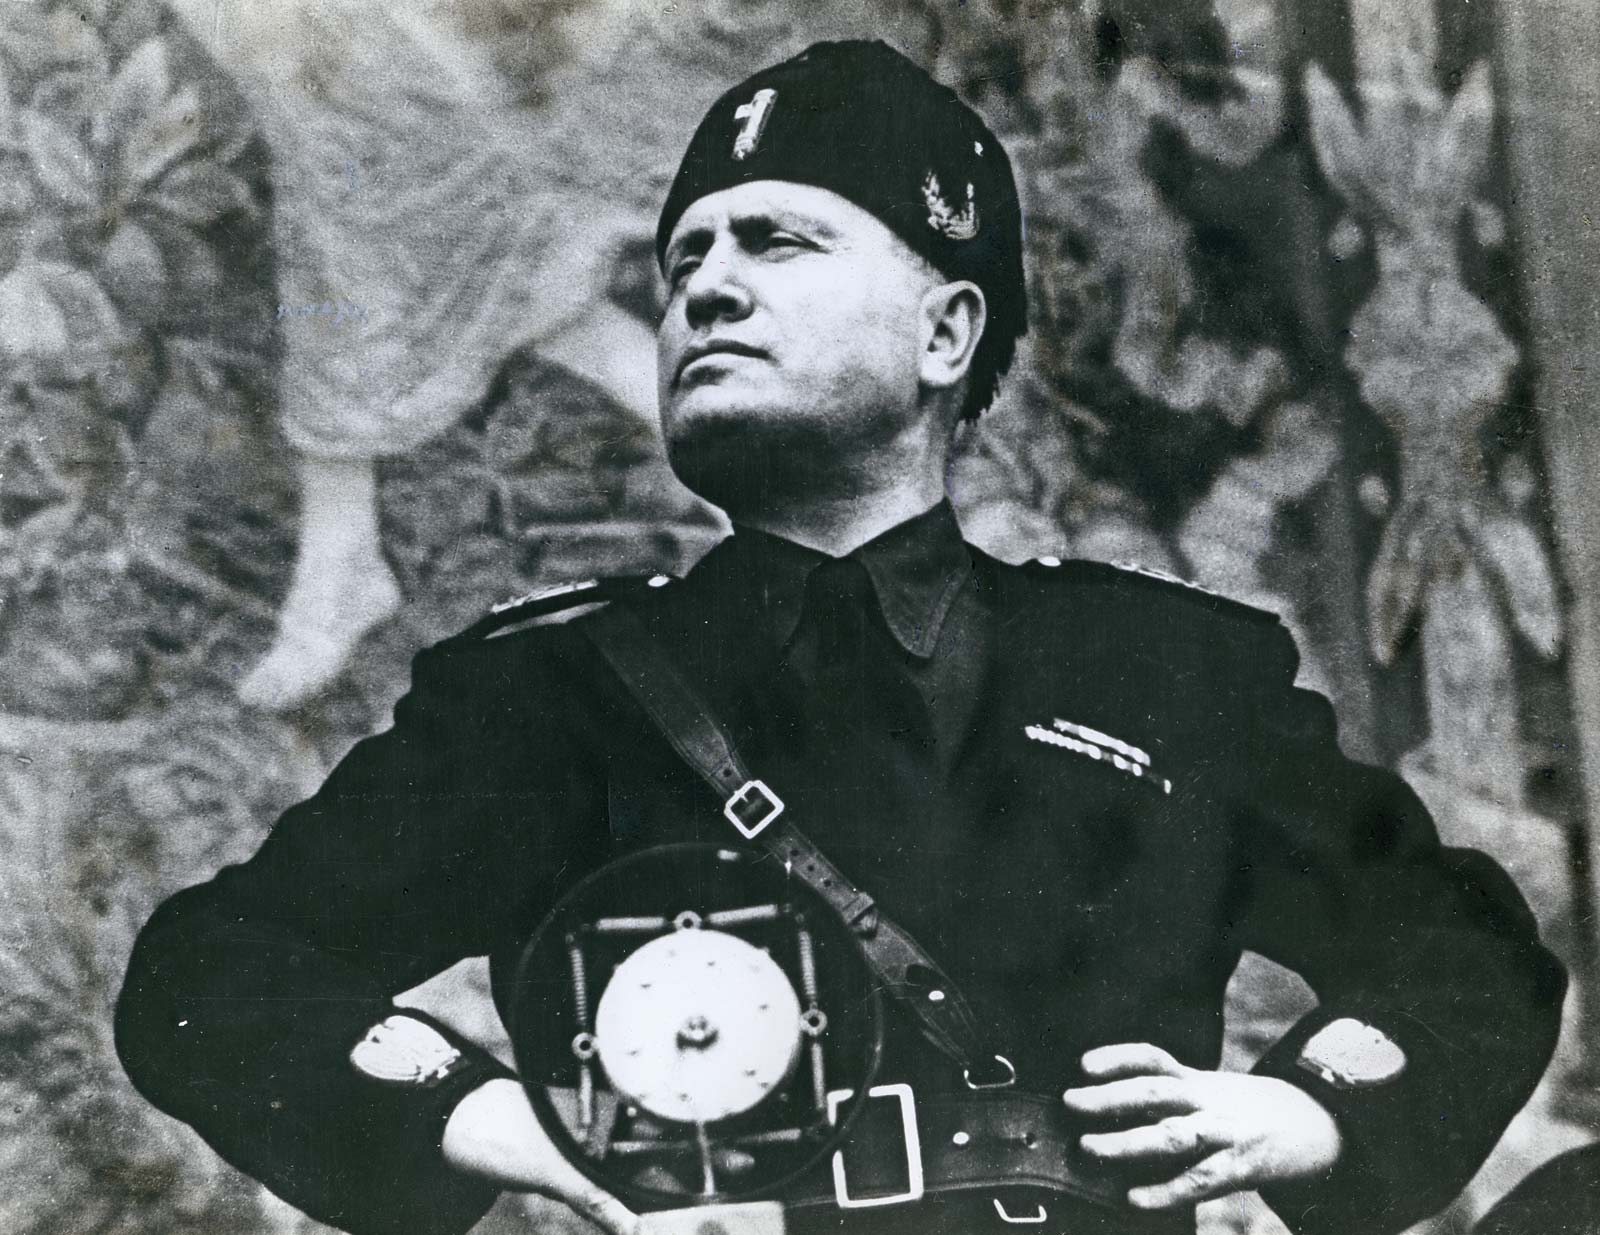 Britannica-Benito Mussolini